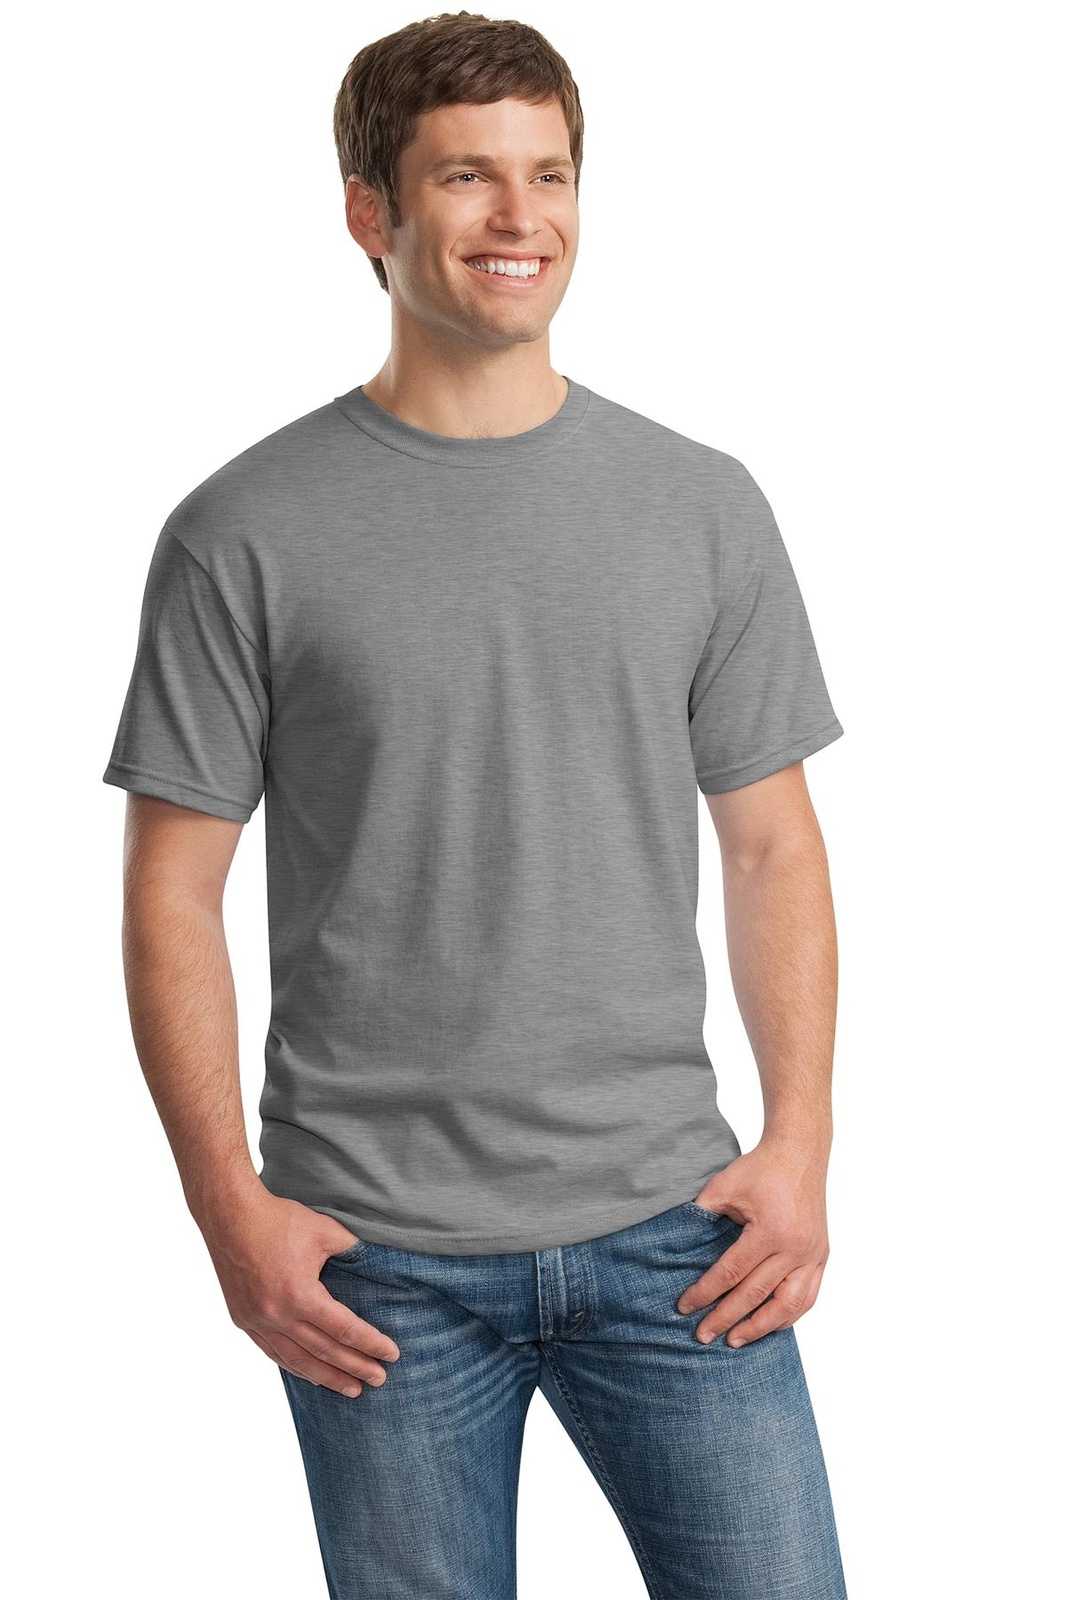 Gildan 5000 Heavy Cotton 100% Cotton T-Shirt - Sport Gray - HIT a Double